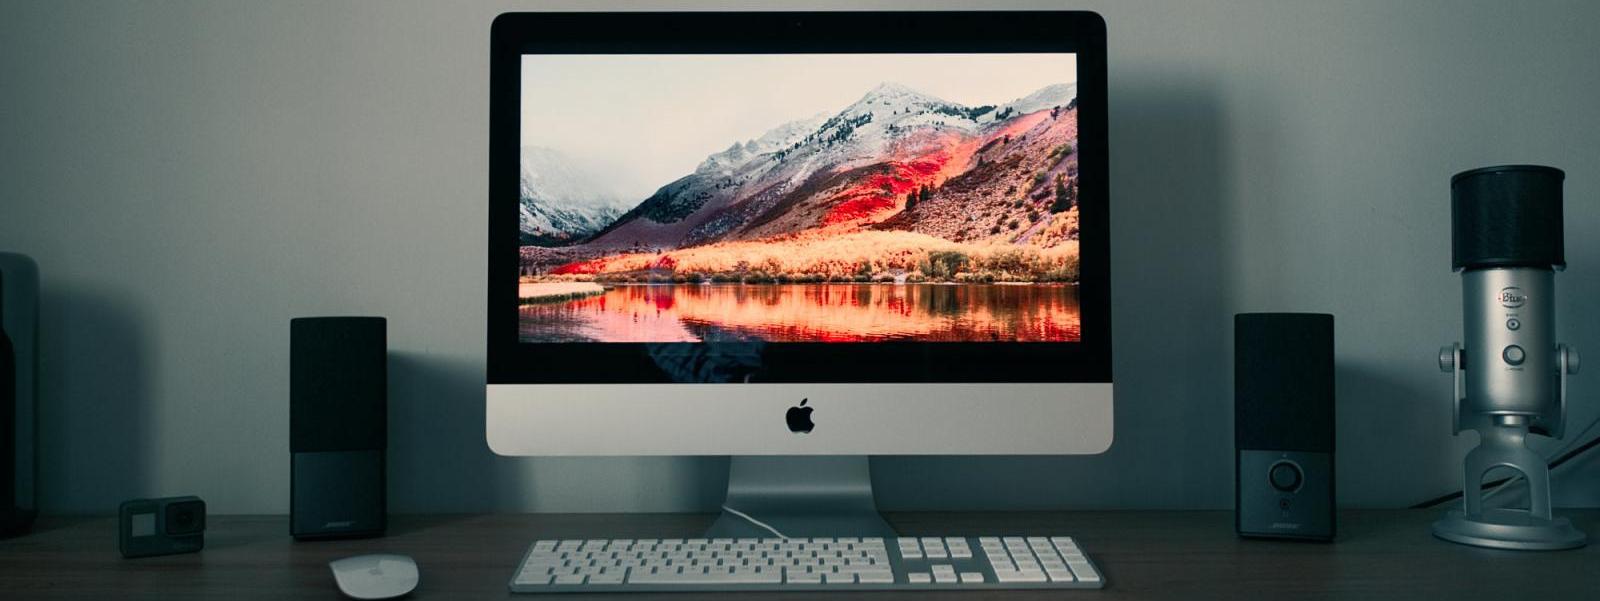 Bienvenidos al Mac: guía imprescindible para dar el salto de Windows a macOS